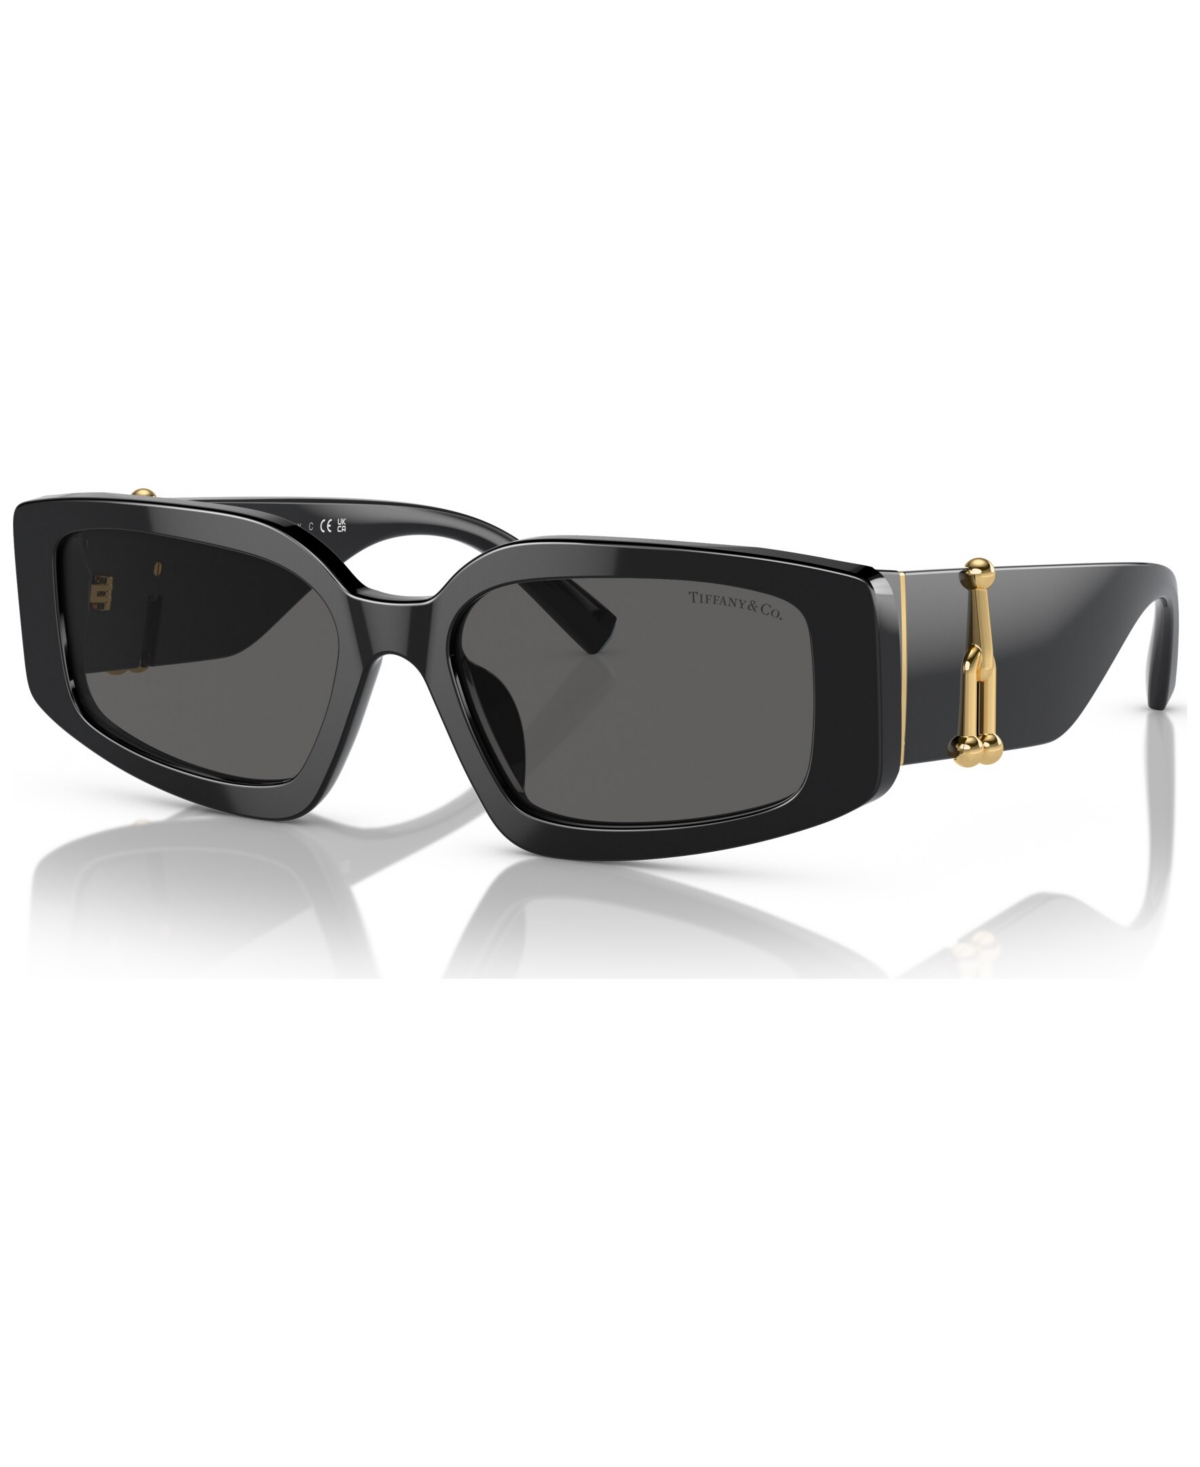 Tiffany & Co Women's Sunglasses, Steve Mcqueen In Black